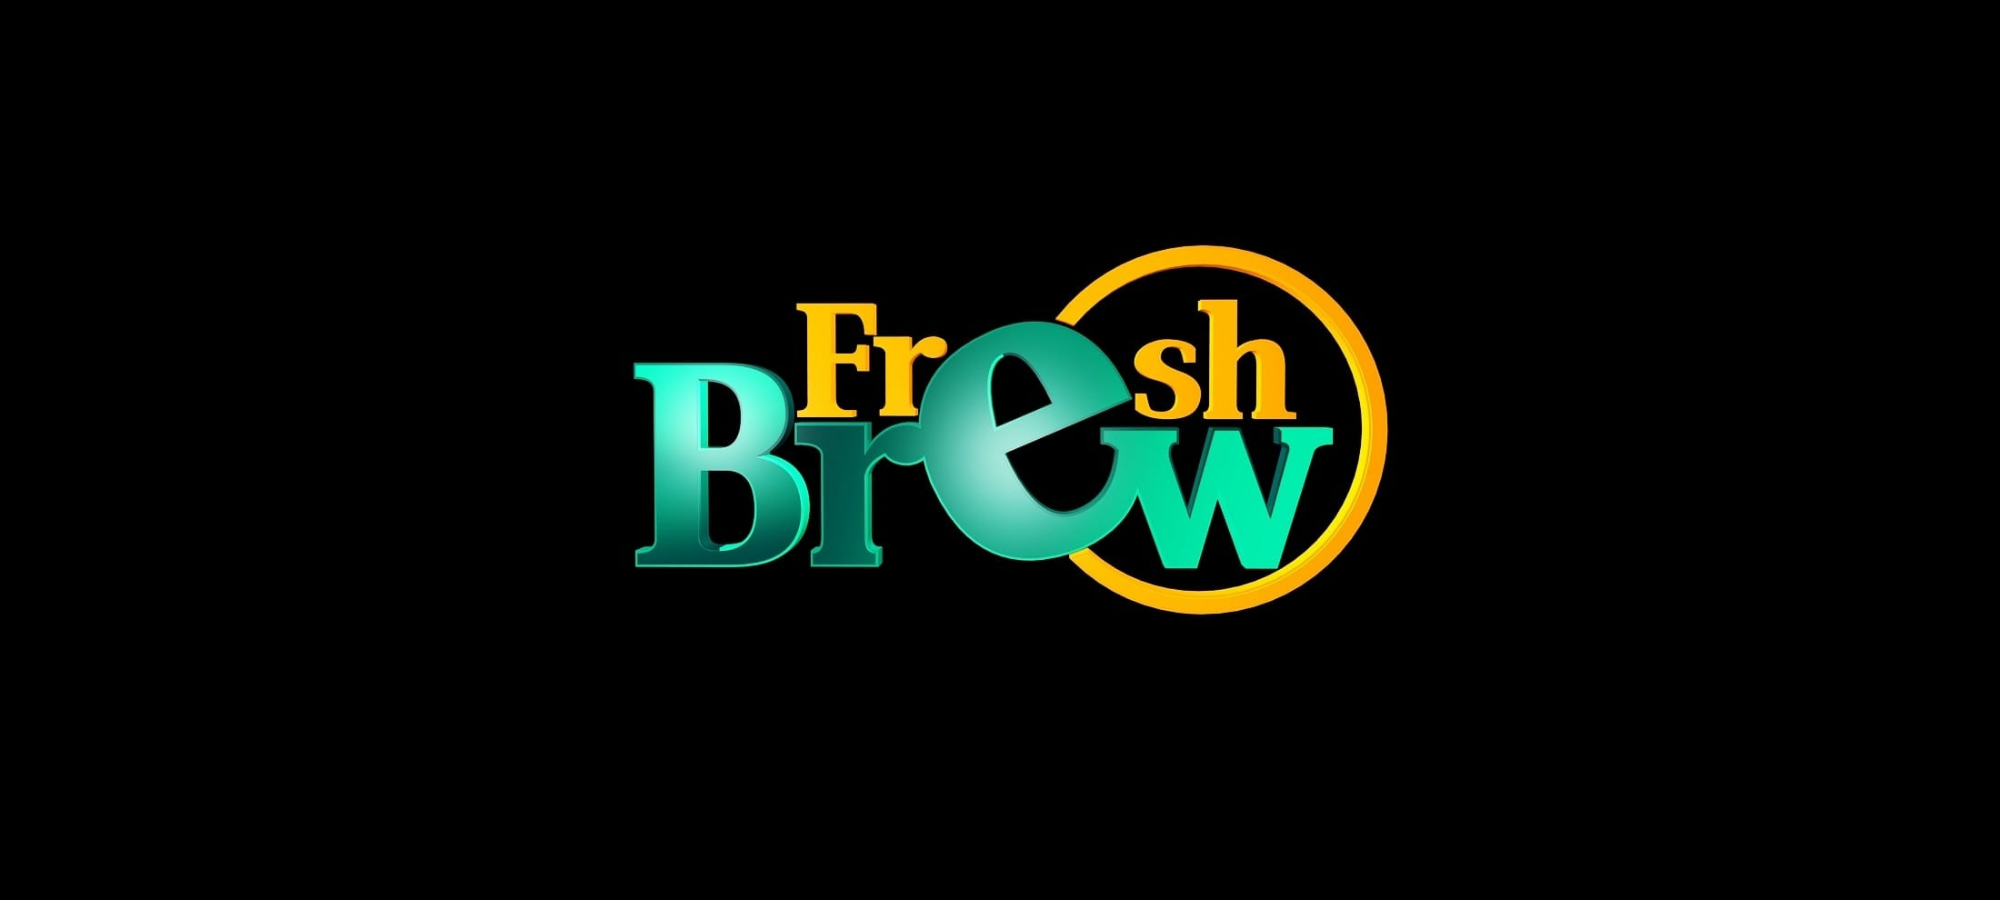 freshbrew1